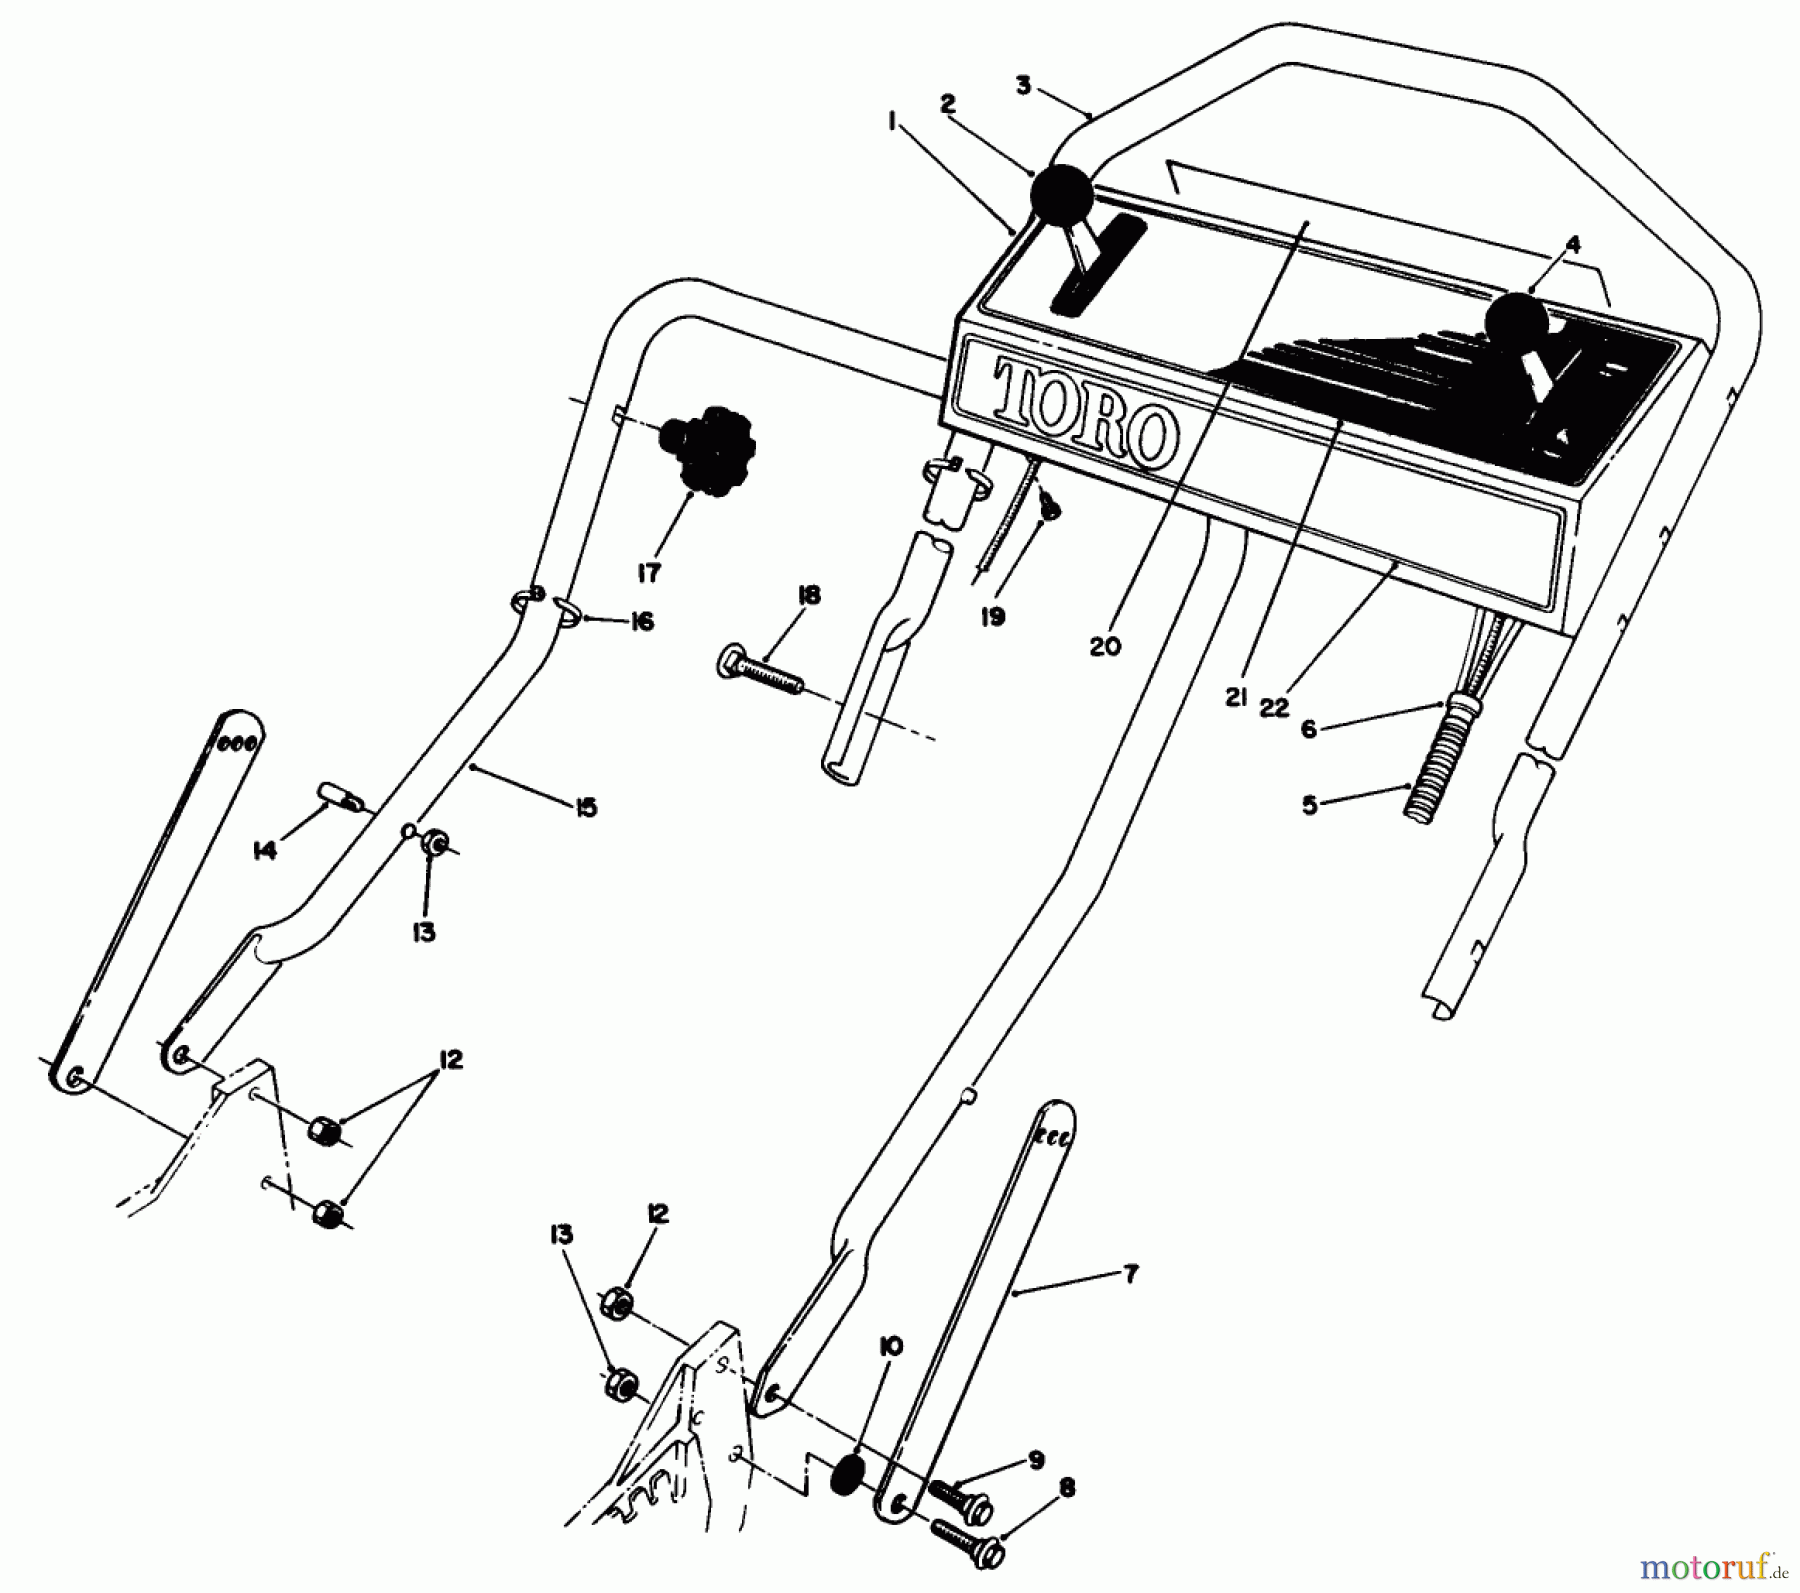  Toro Neu Mowers, Walk-Behind Seite 1 20620C - Toro Lawnmower, 1988 (8000001-8999999) HANDLE ASSEMBLY